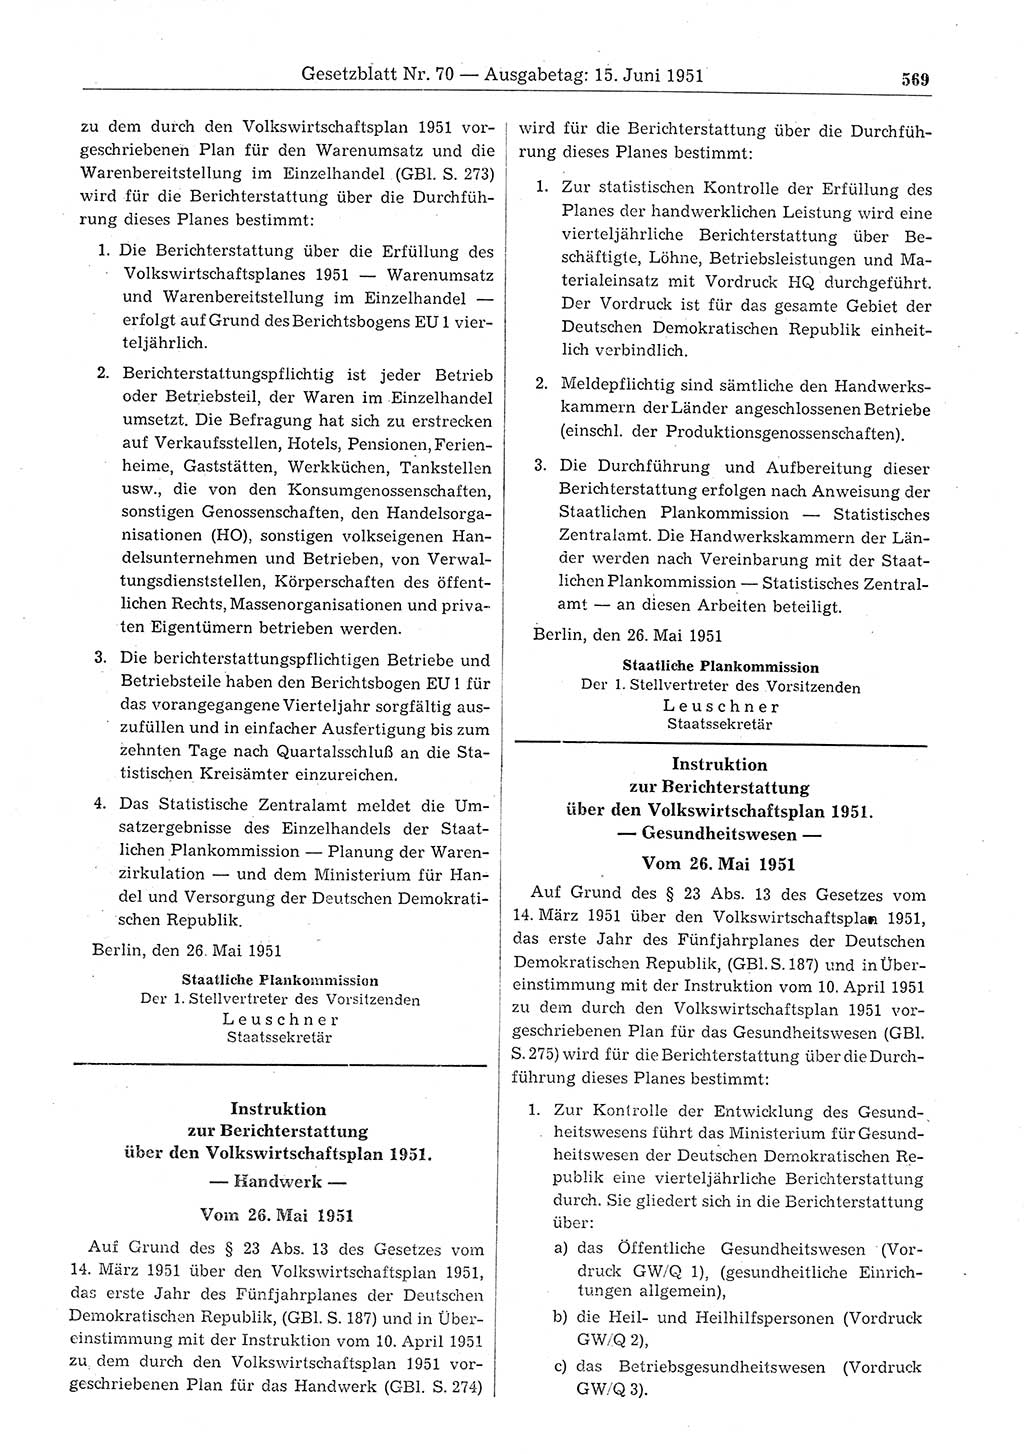 Gesetzblatt (GBl.) der Deutschen Demokratischen Republik (DDR) 1951, Seite 569 (GBl. DDR 1951, S. 569)